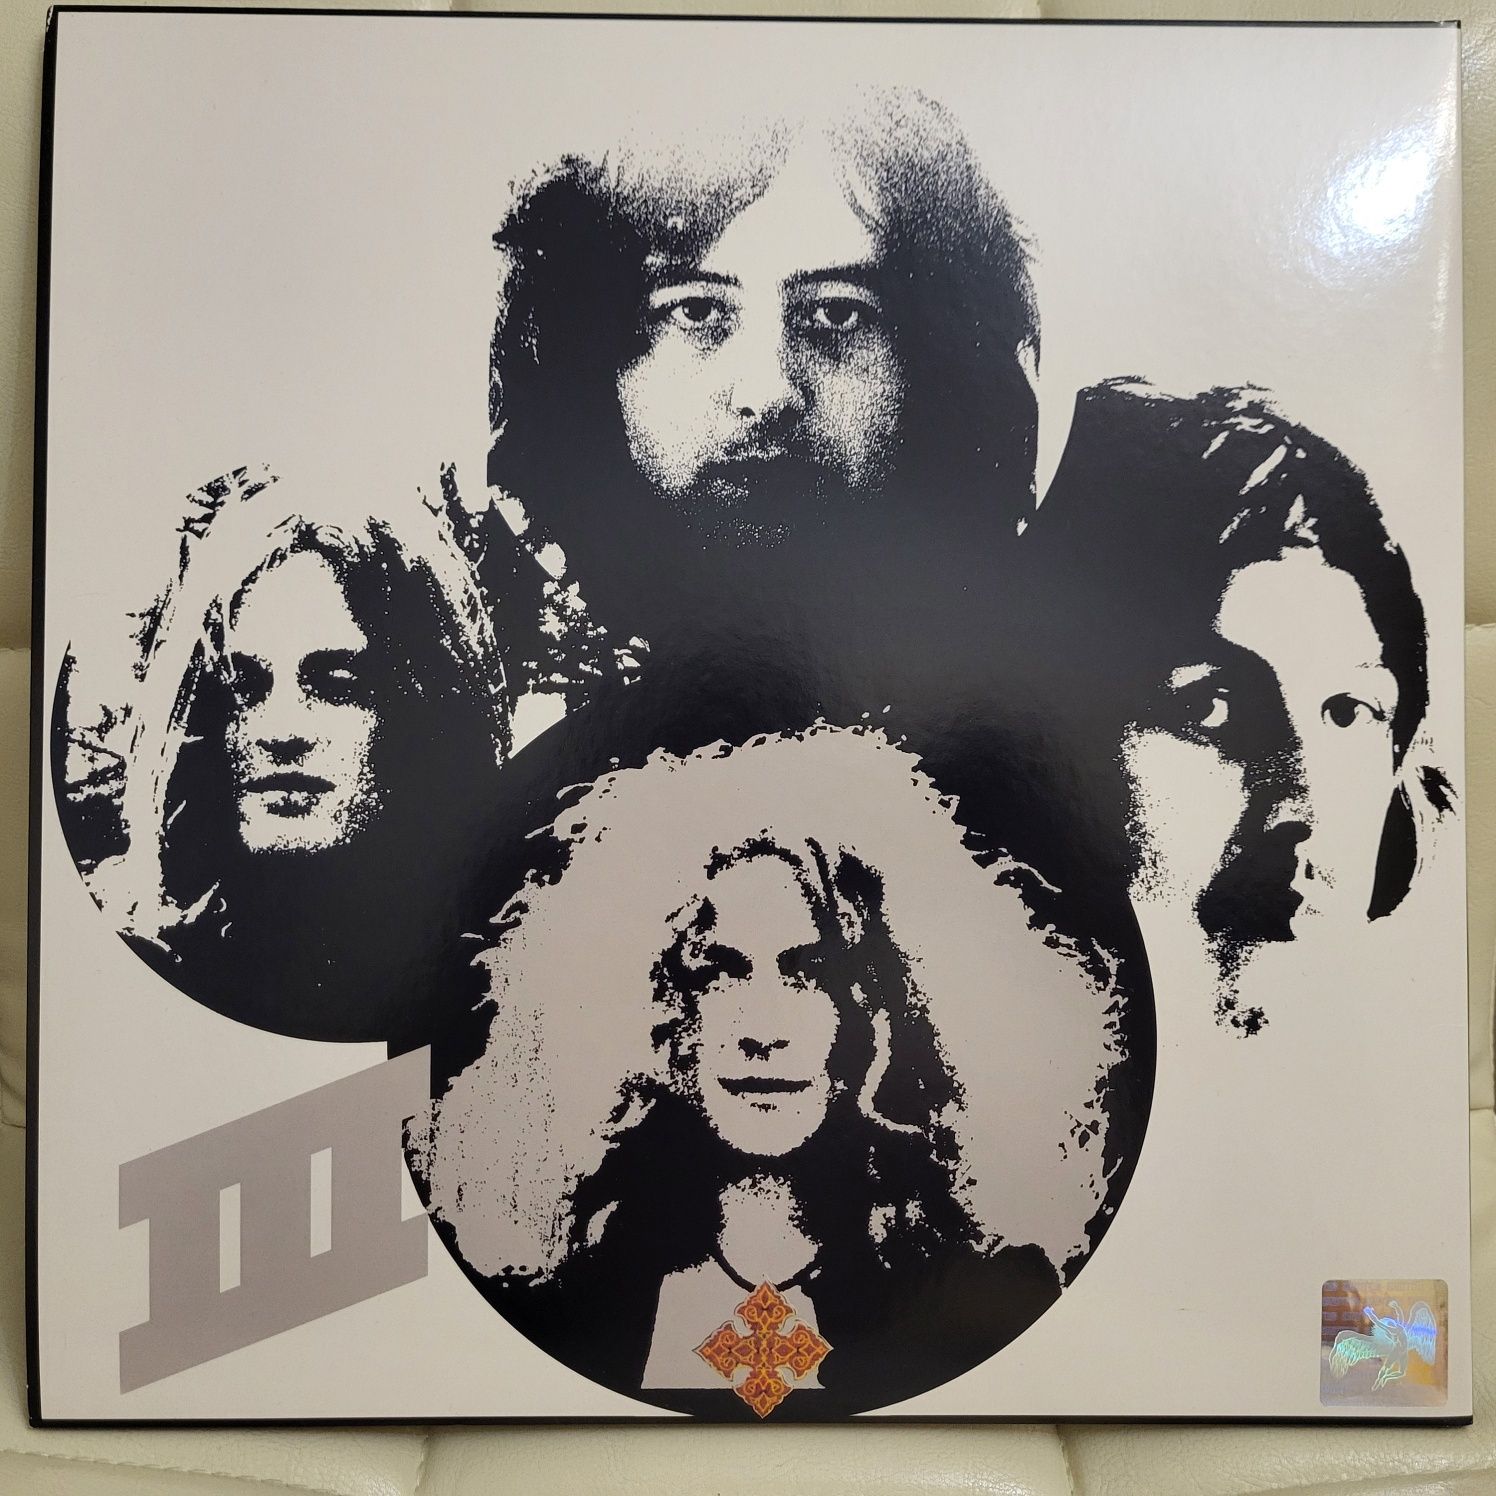 Led Zeppelin III 180g 2014